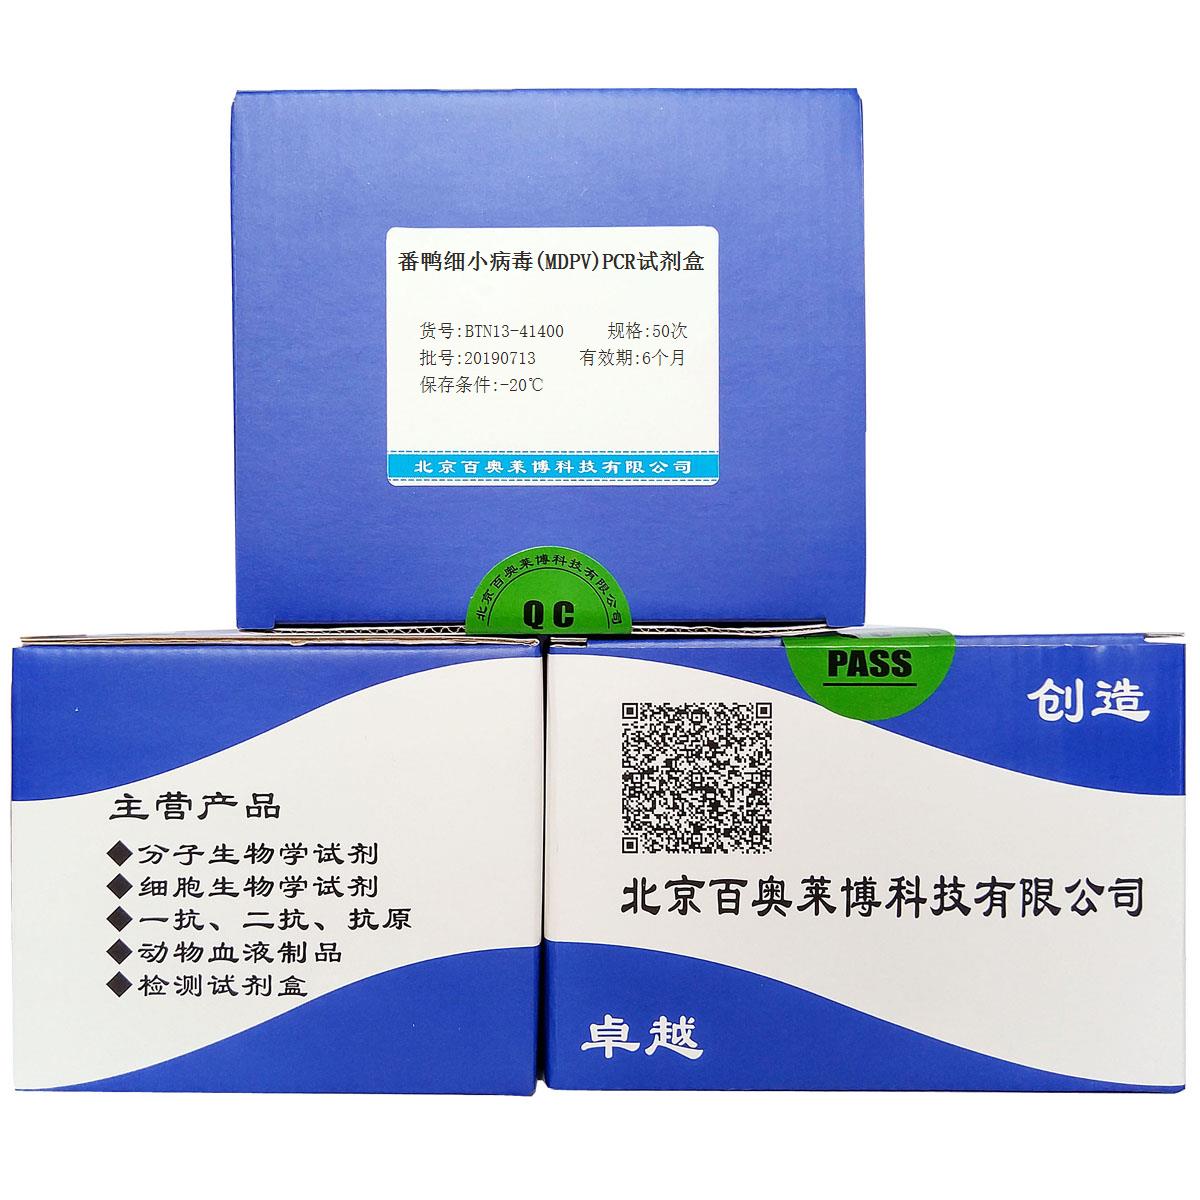 番鸭细小病毒(MDPV)PCR试剂盒优惠促销